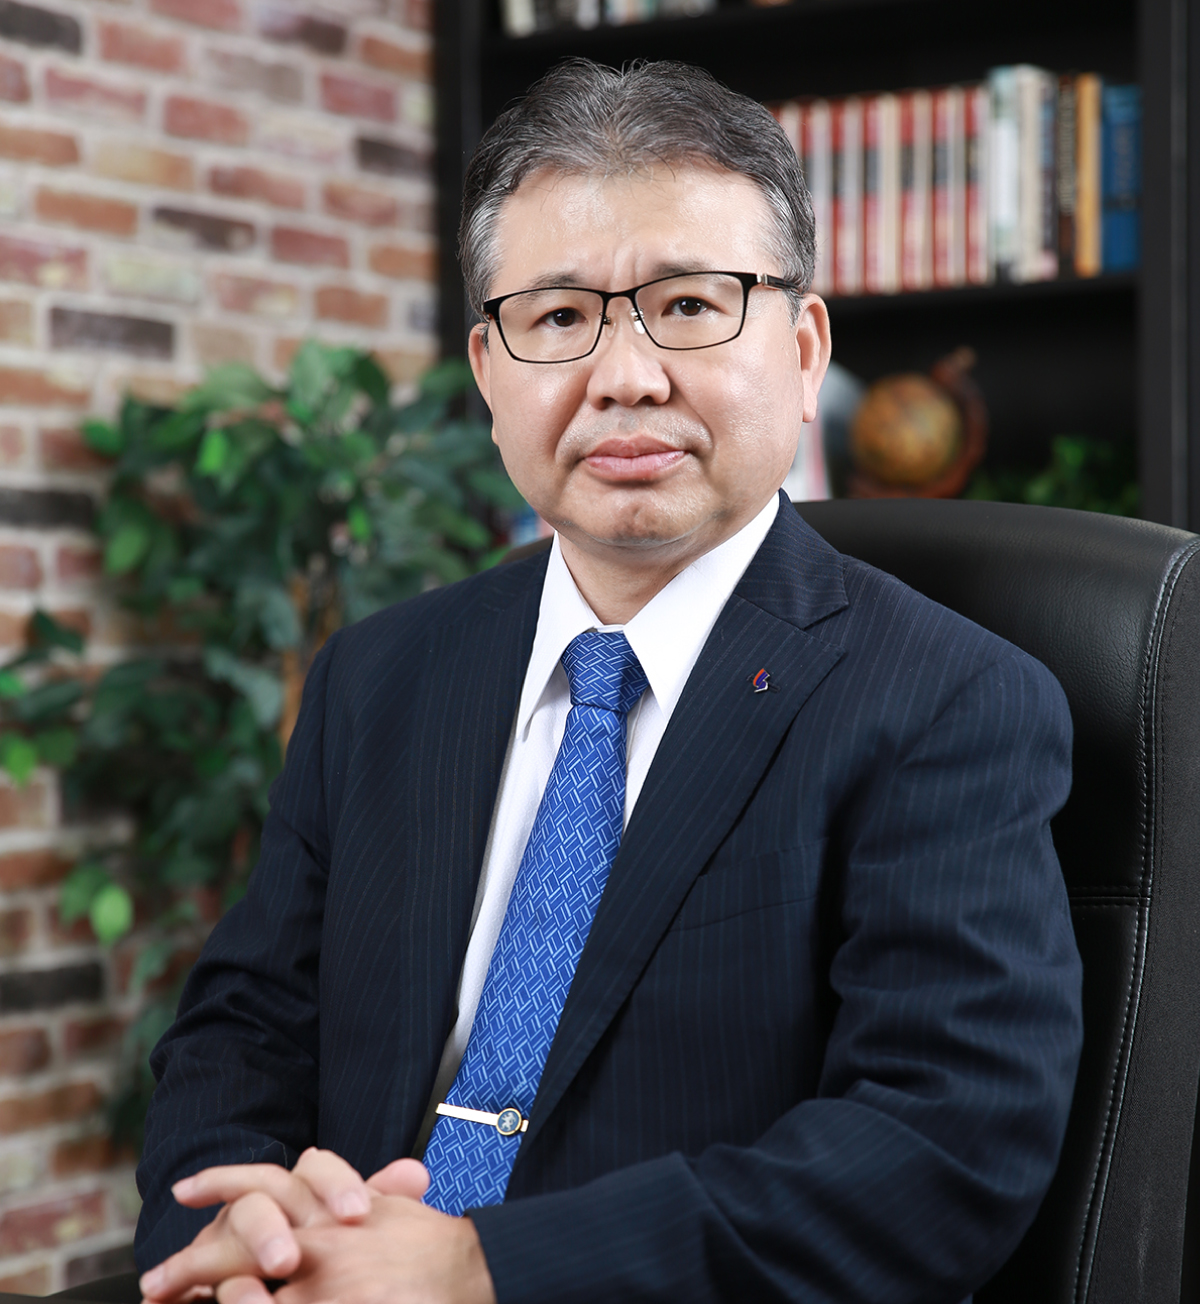 三軌建設株式会社 代表取締役社長 松本 喜代孝